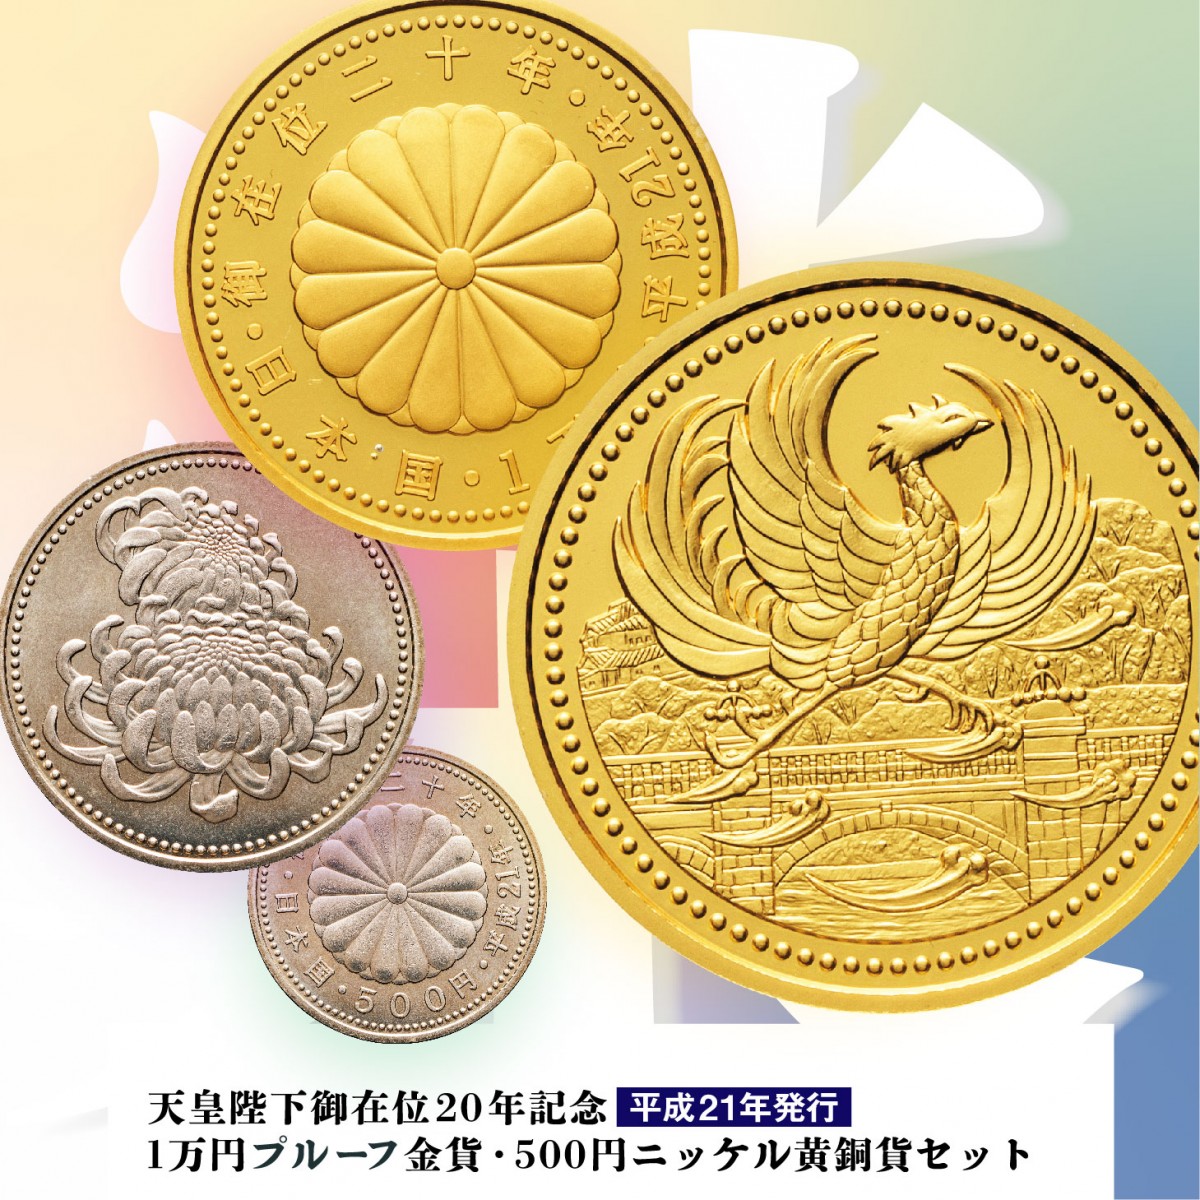 天皇陛下御在位20年記念 1万円プルーフ金貨・500円ニッケル黄銅貨